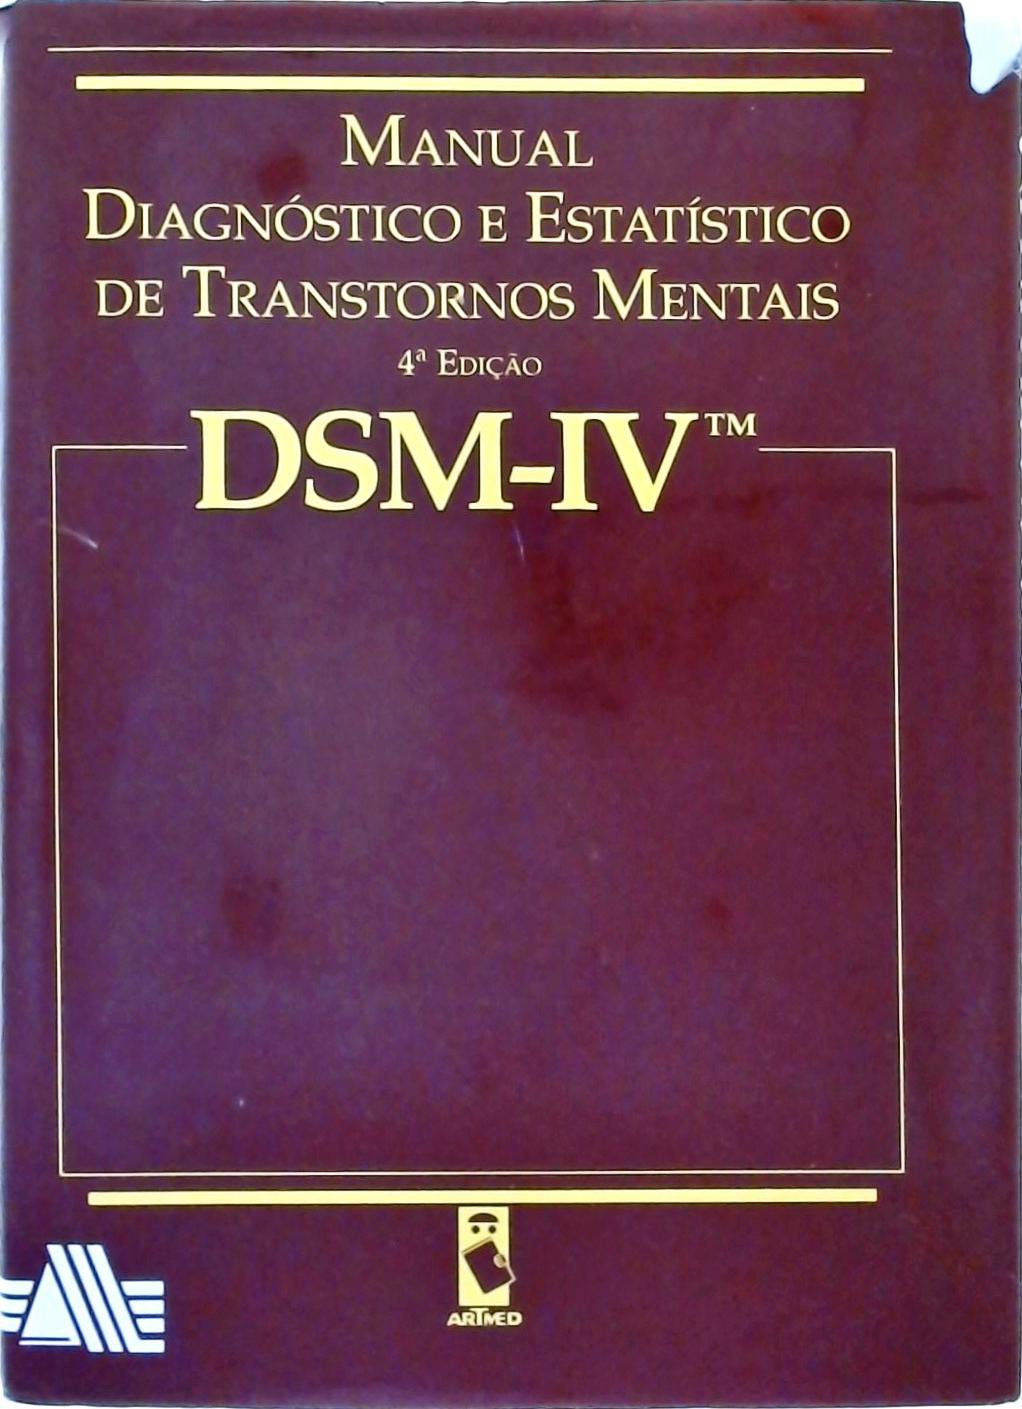 Dsm-lv Manual Diagnóstico E Estatístico De Transtornos Mentais